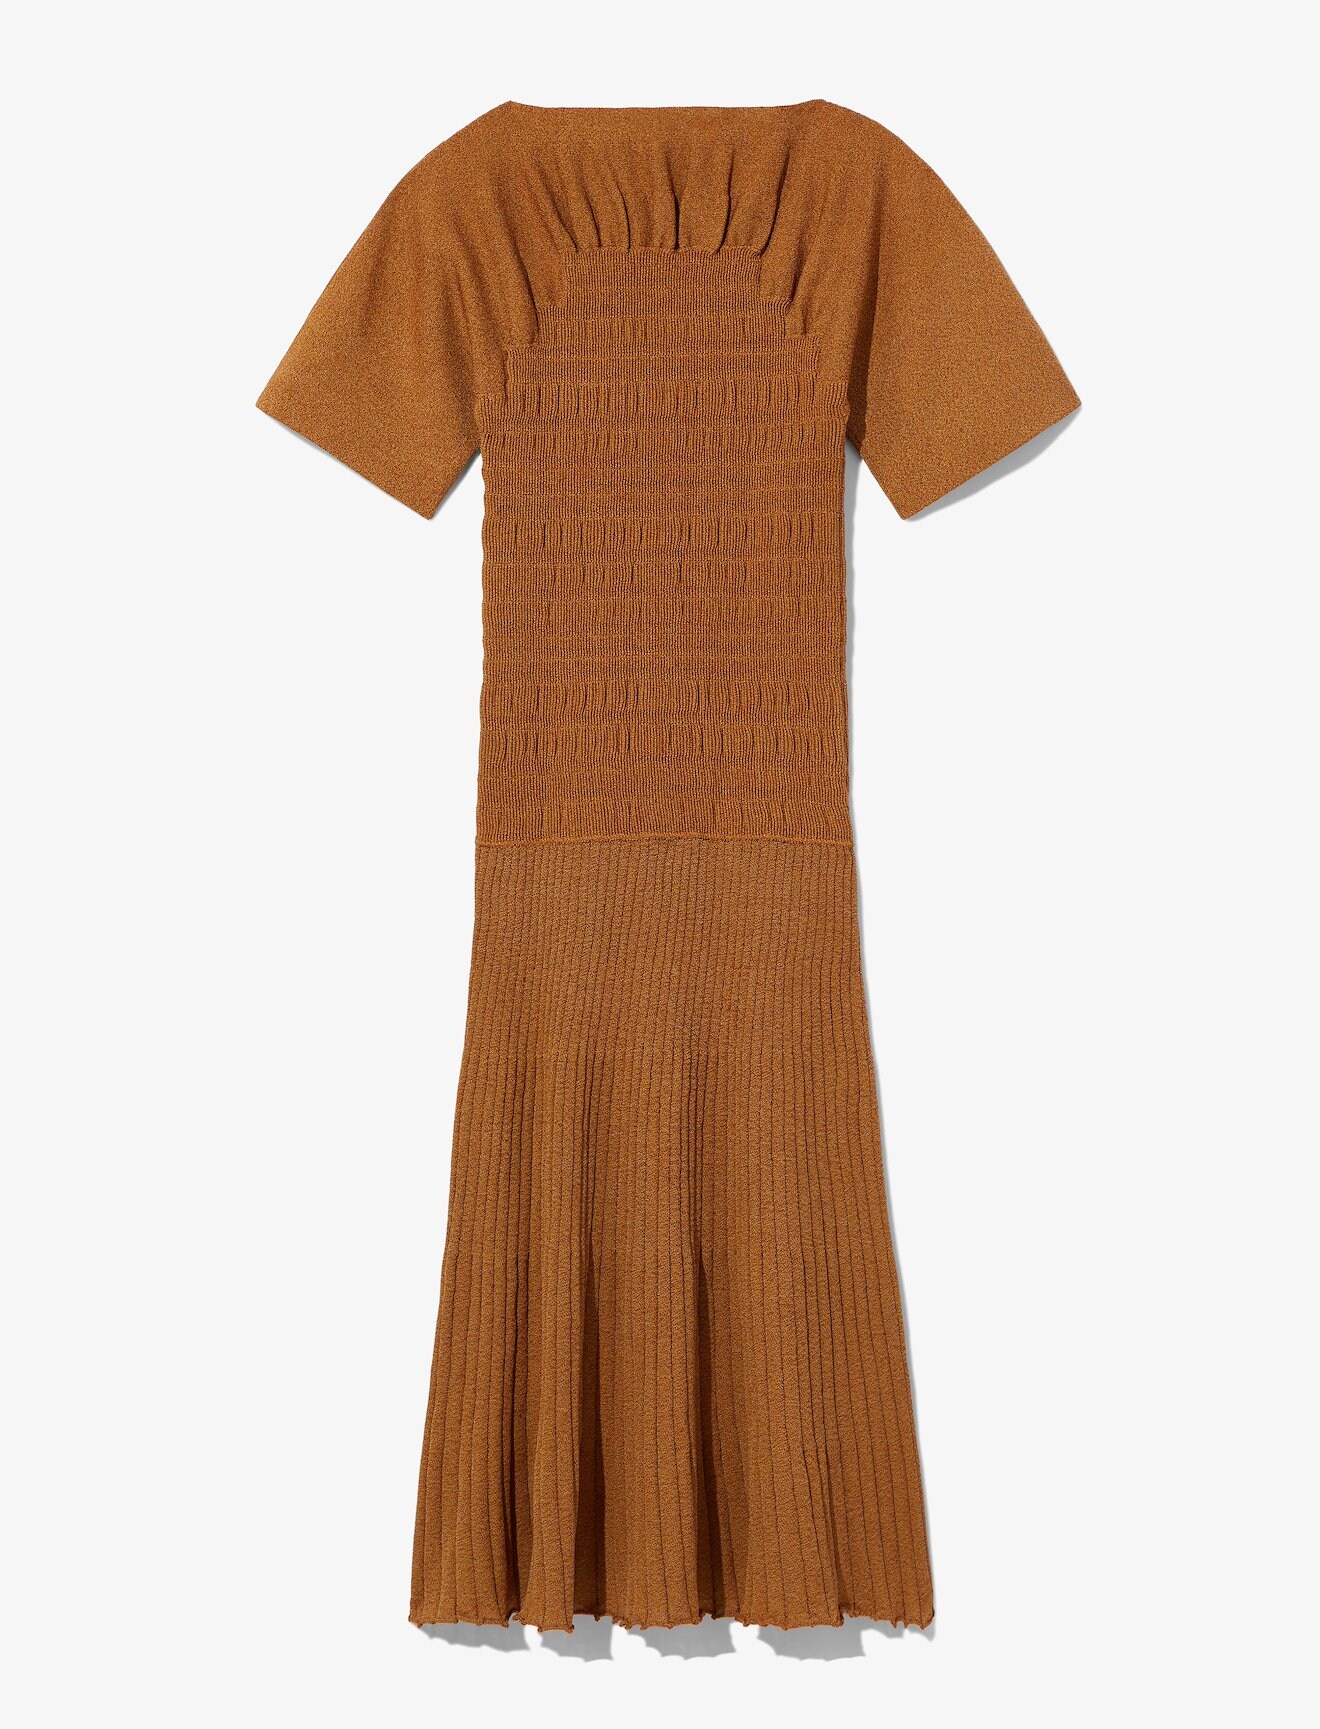 Smocked Knit Dress #4